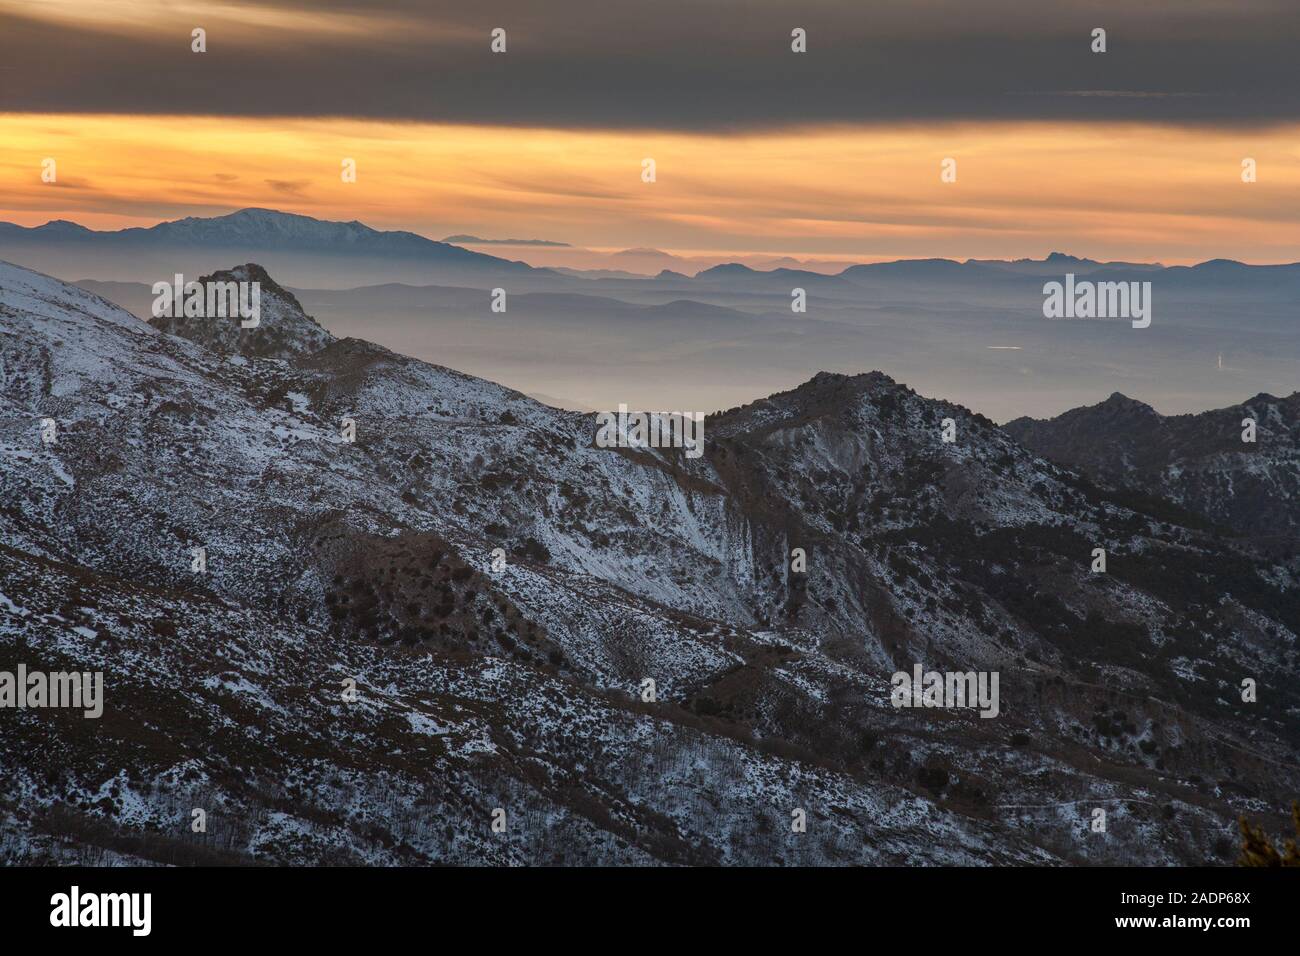 La gauche en Tejeda Pico distance, vu de la Sierra Nevada au coucher du soleil, Grenade, Andalousie, Espagne Banque D'Images